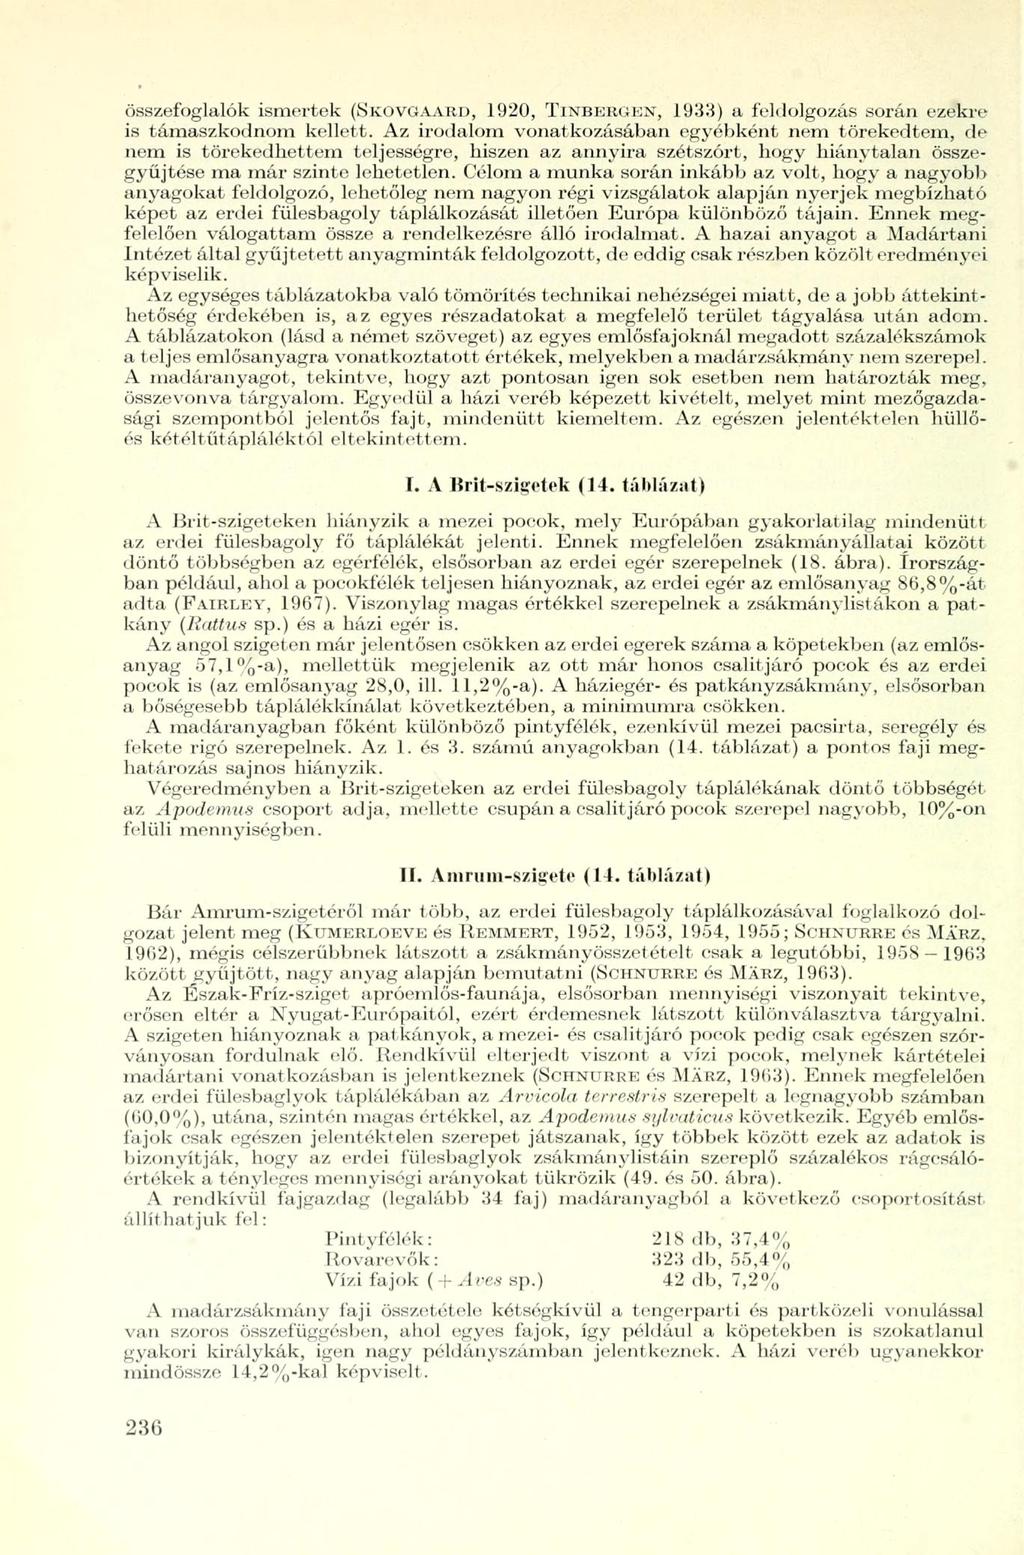 összefoglalók ismertek (SKOVGAARD, 1920, TINBERGEN, 19311) a feldolgozás során ezekre is támaszkodnom kellett.